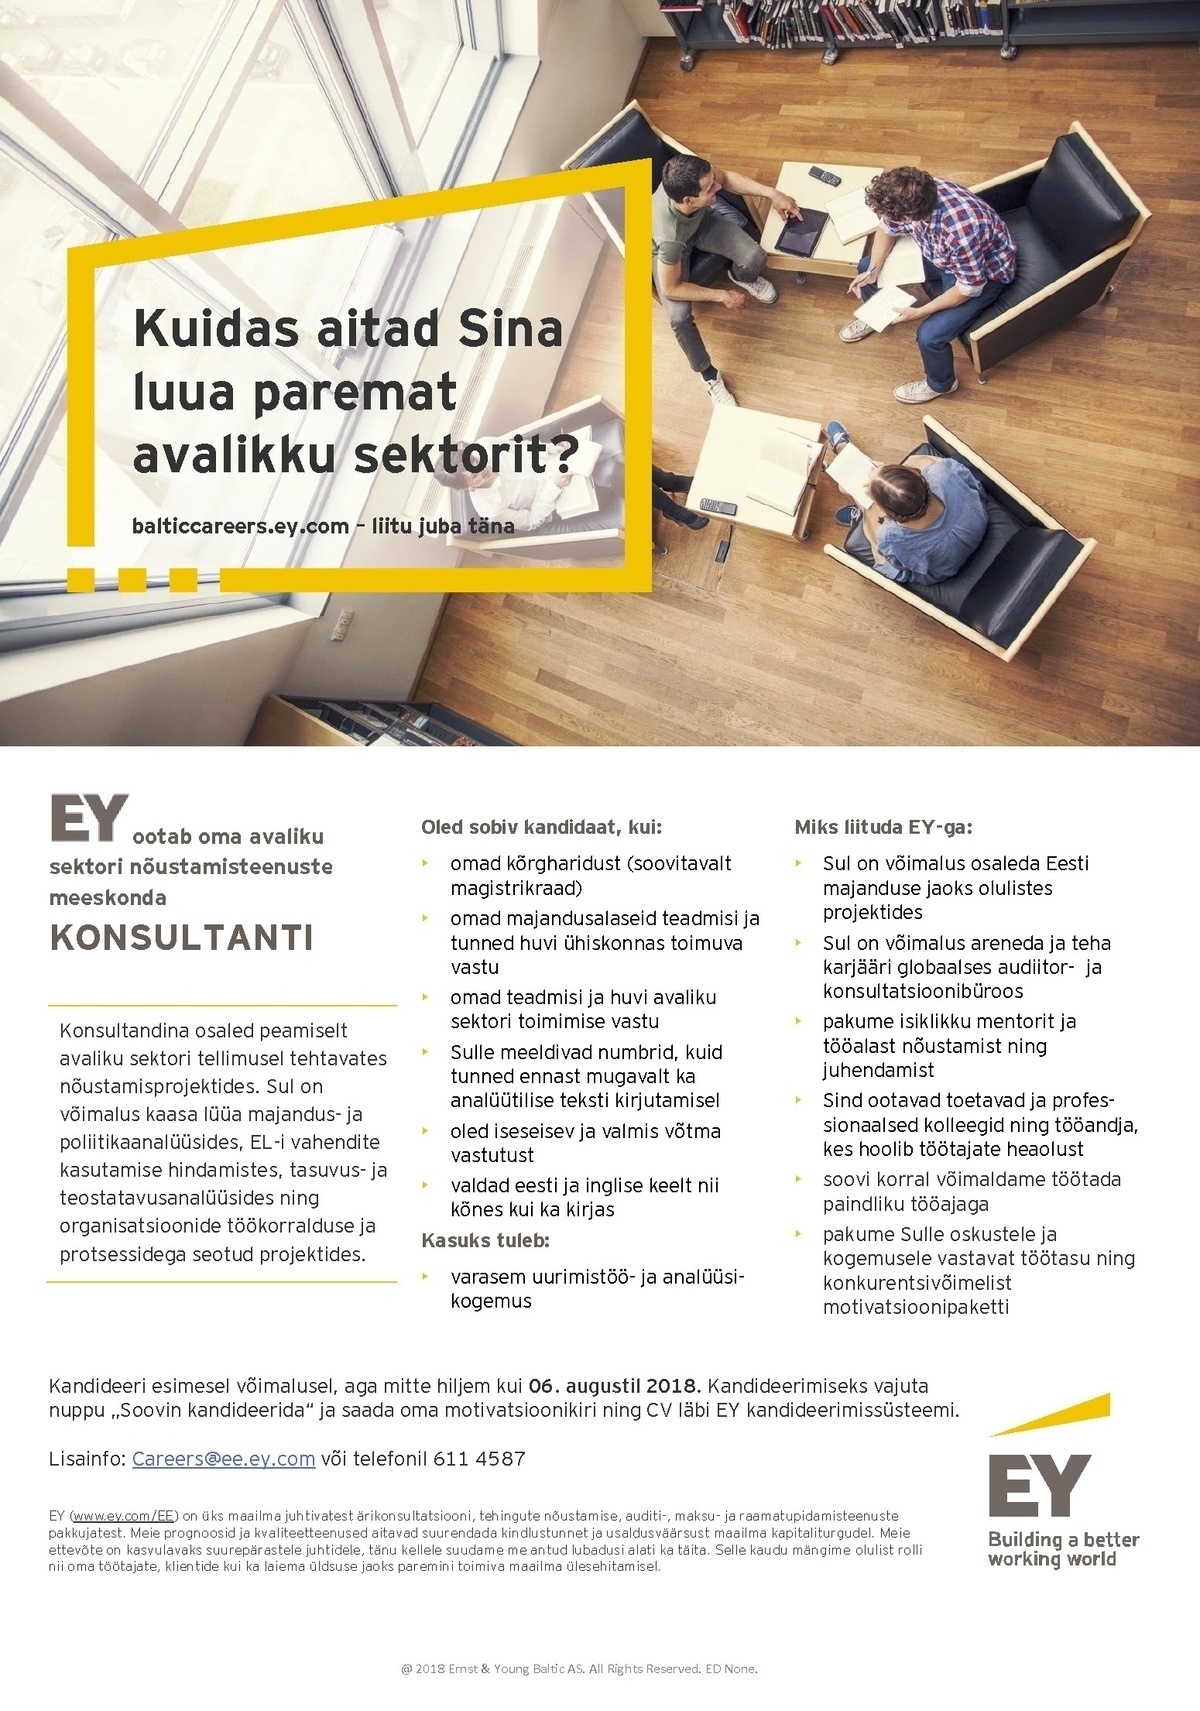 Ernst & Young Baltic AS Konsultant avaliku sektori nõustamisteenuste meeskonnas